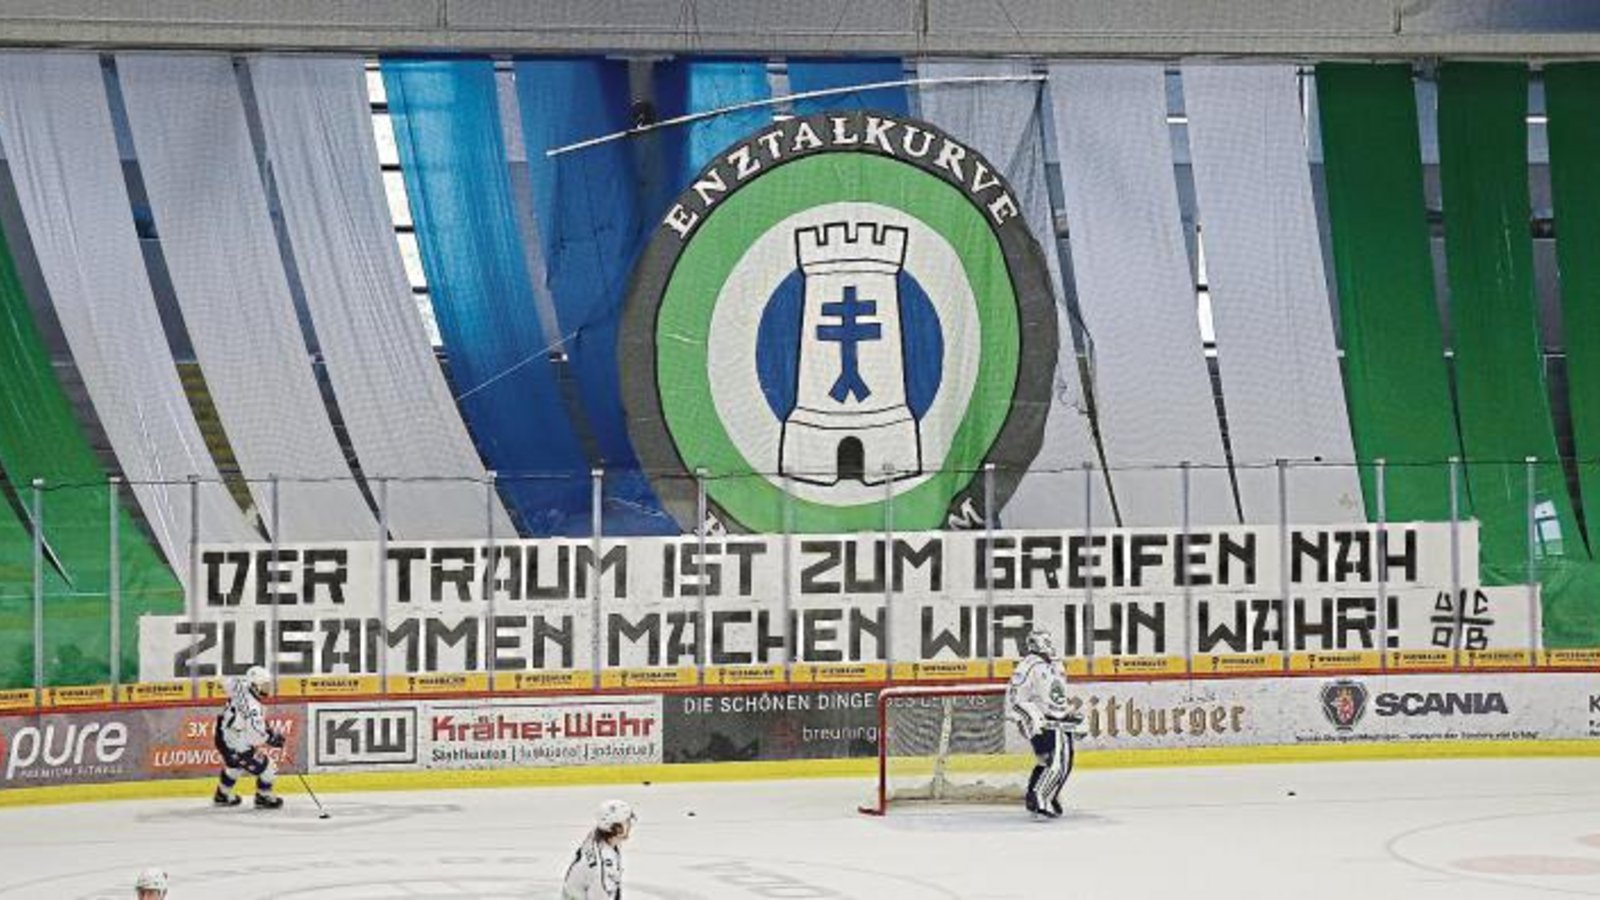 Der Traum ist nicht mehr nur zum Greifen nah, wie Fans während der Playoffs auf einem Plakat in der Ege-Trans-Arena meinten. Die Bietigheim Steelers spielen in der neuen Saison in der Deutschen Eishockey Liga (DEL). Foto: Baumann